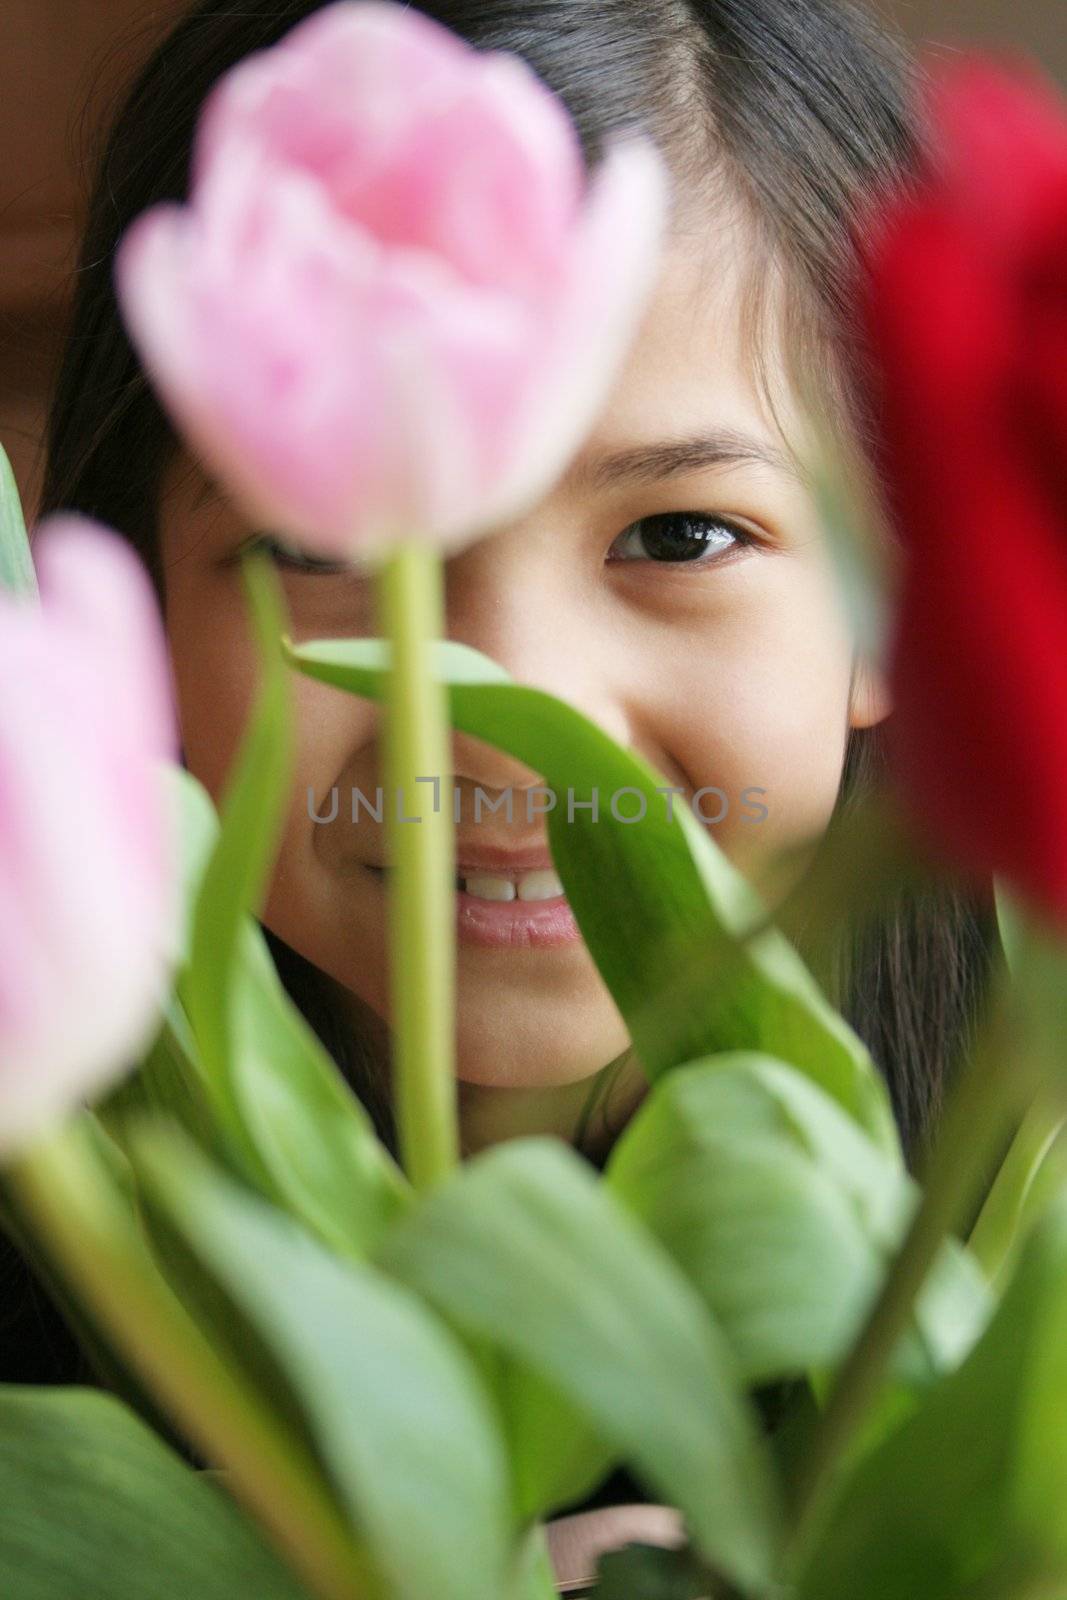 Child peeking through tulips by jarenwicklund